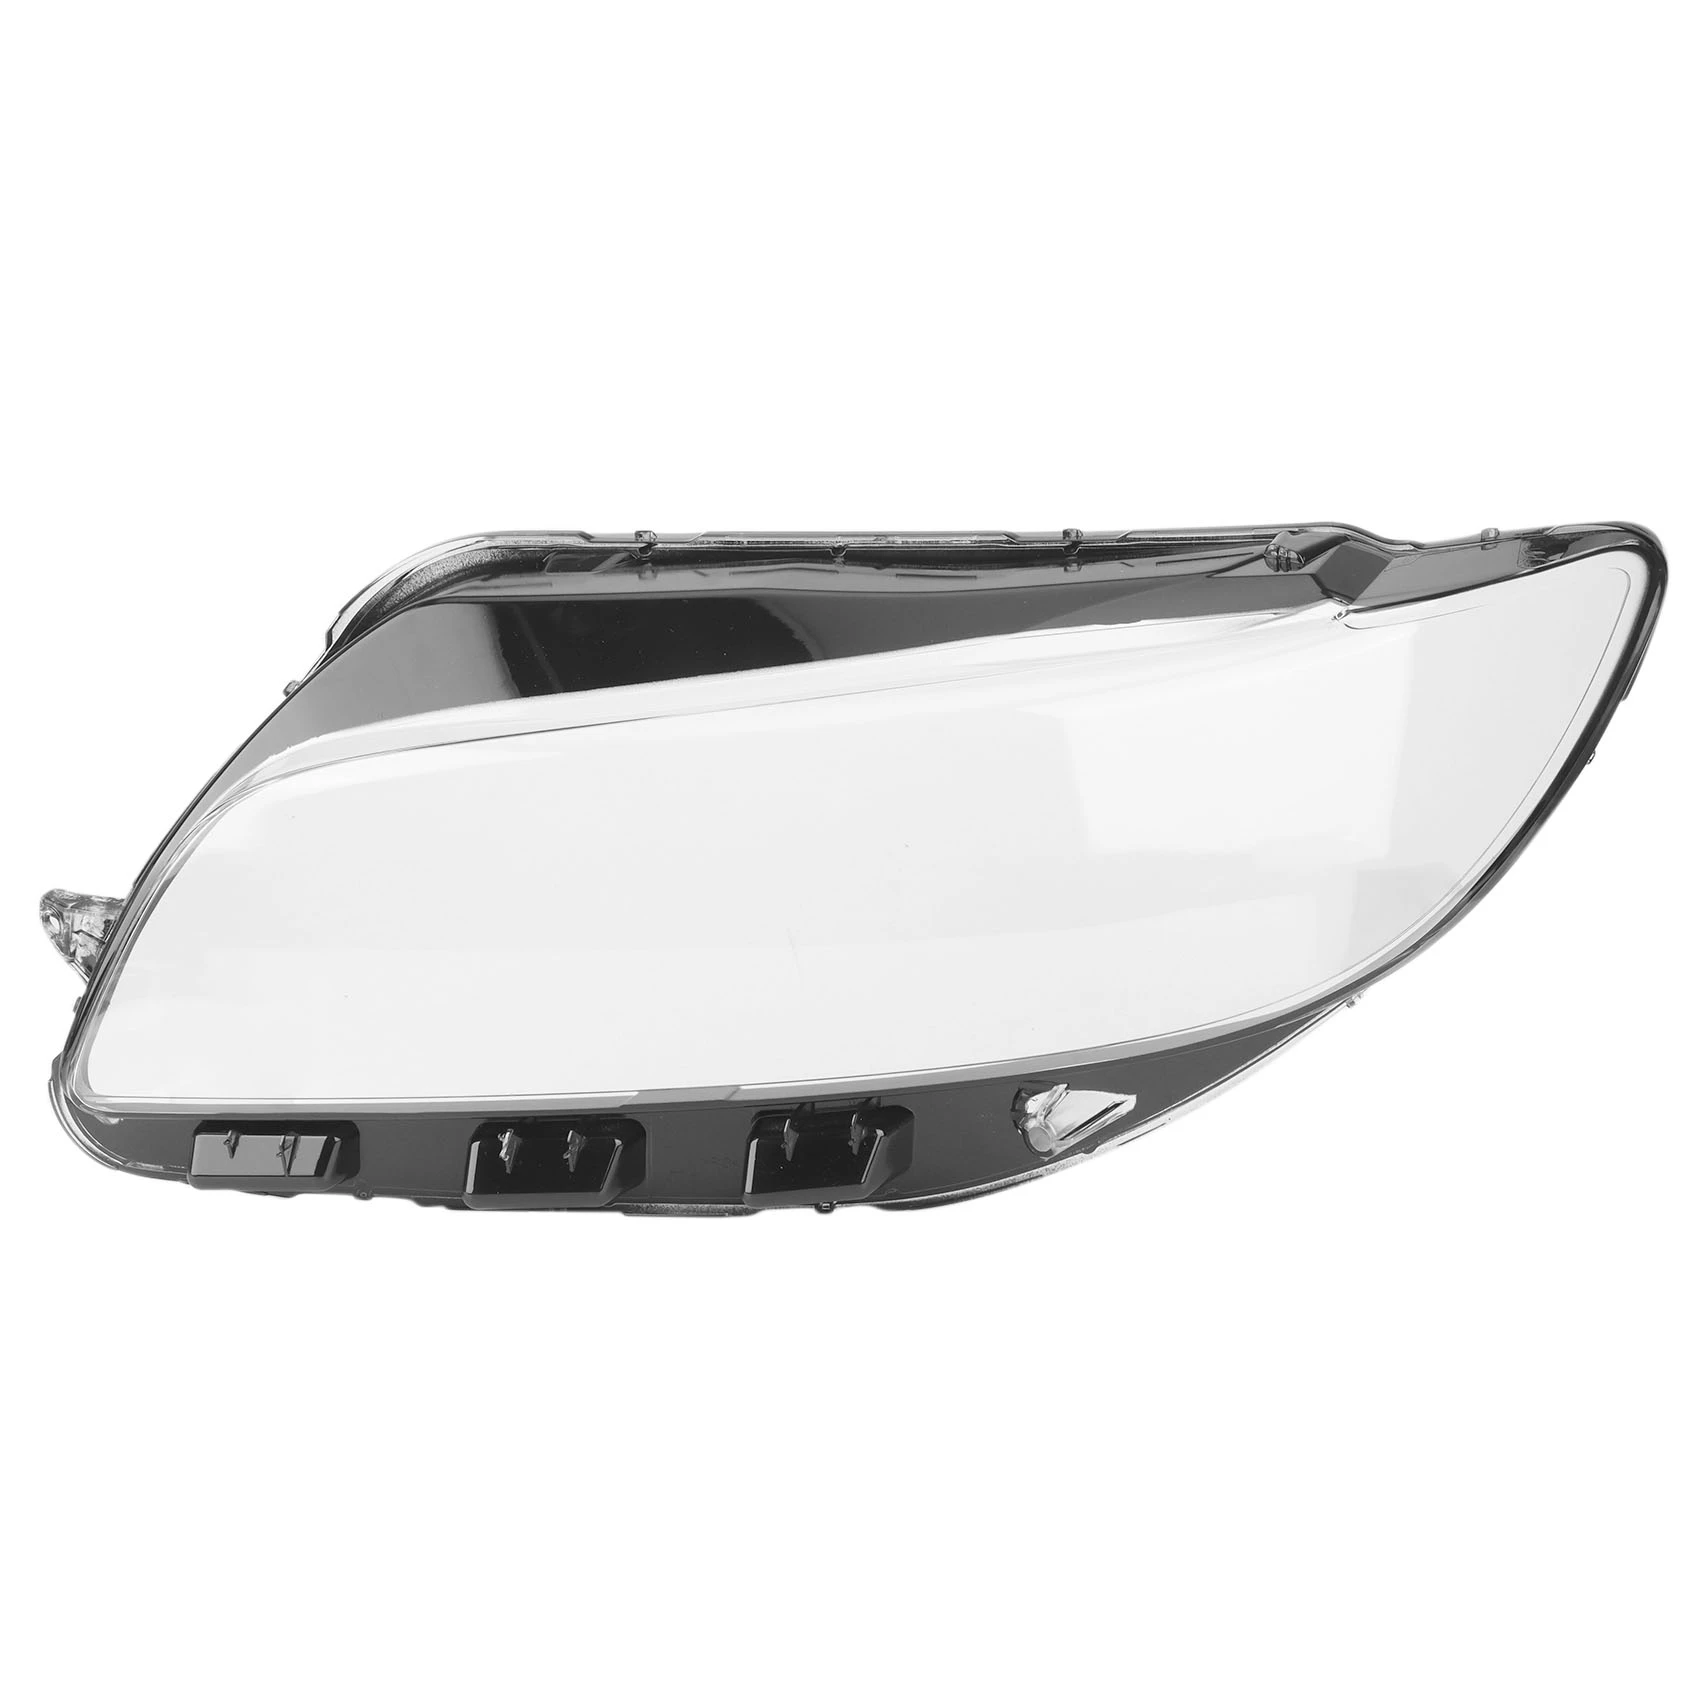 

1 пара для MKZ 2017, 18, 19, 2020, автомобильная фара, крышка объектива, светозащитная оболочка, прозрачная стеклянная крышка, левая и правая